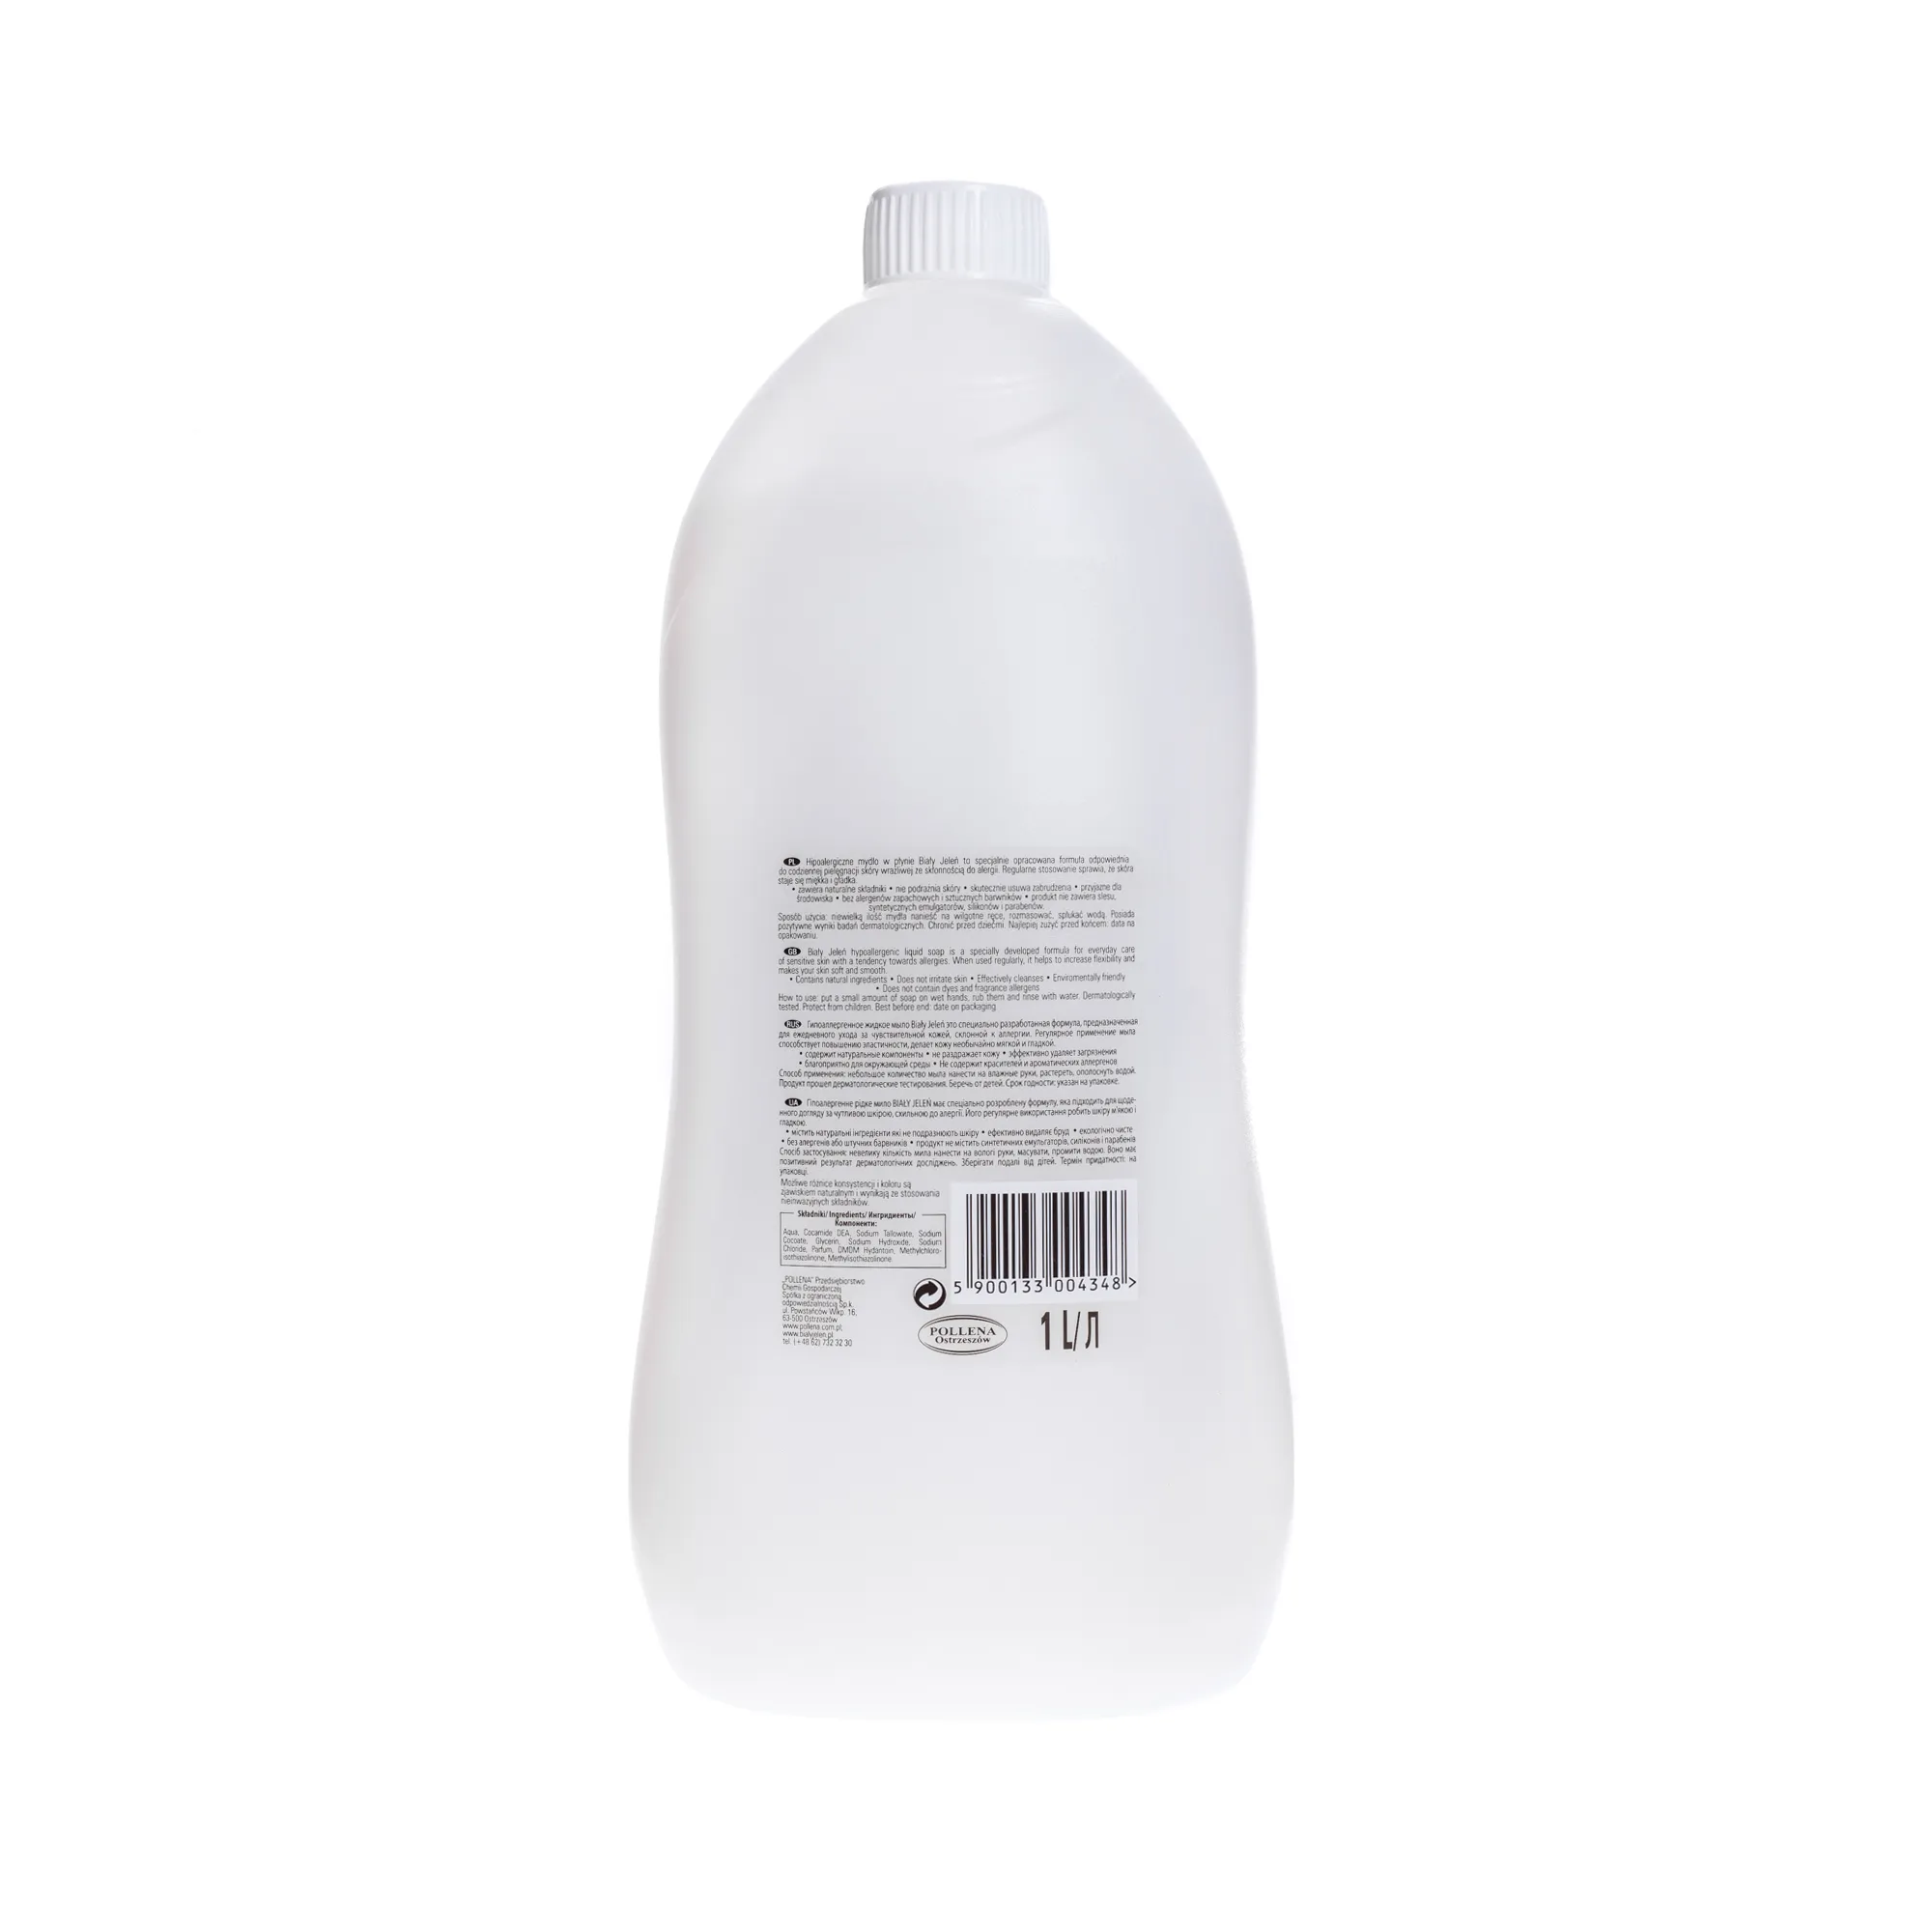 Biały Jeleń, hipoalergiczne mydło w płynie, 1 l 